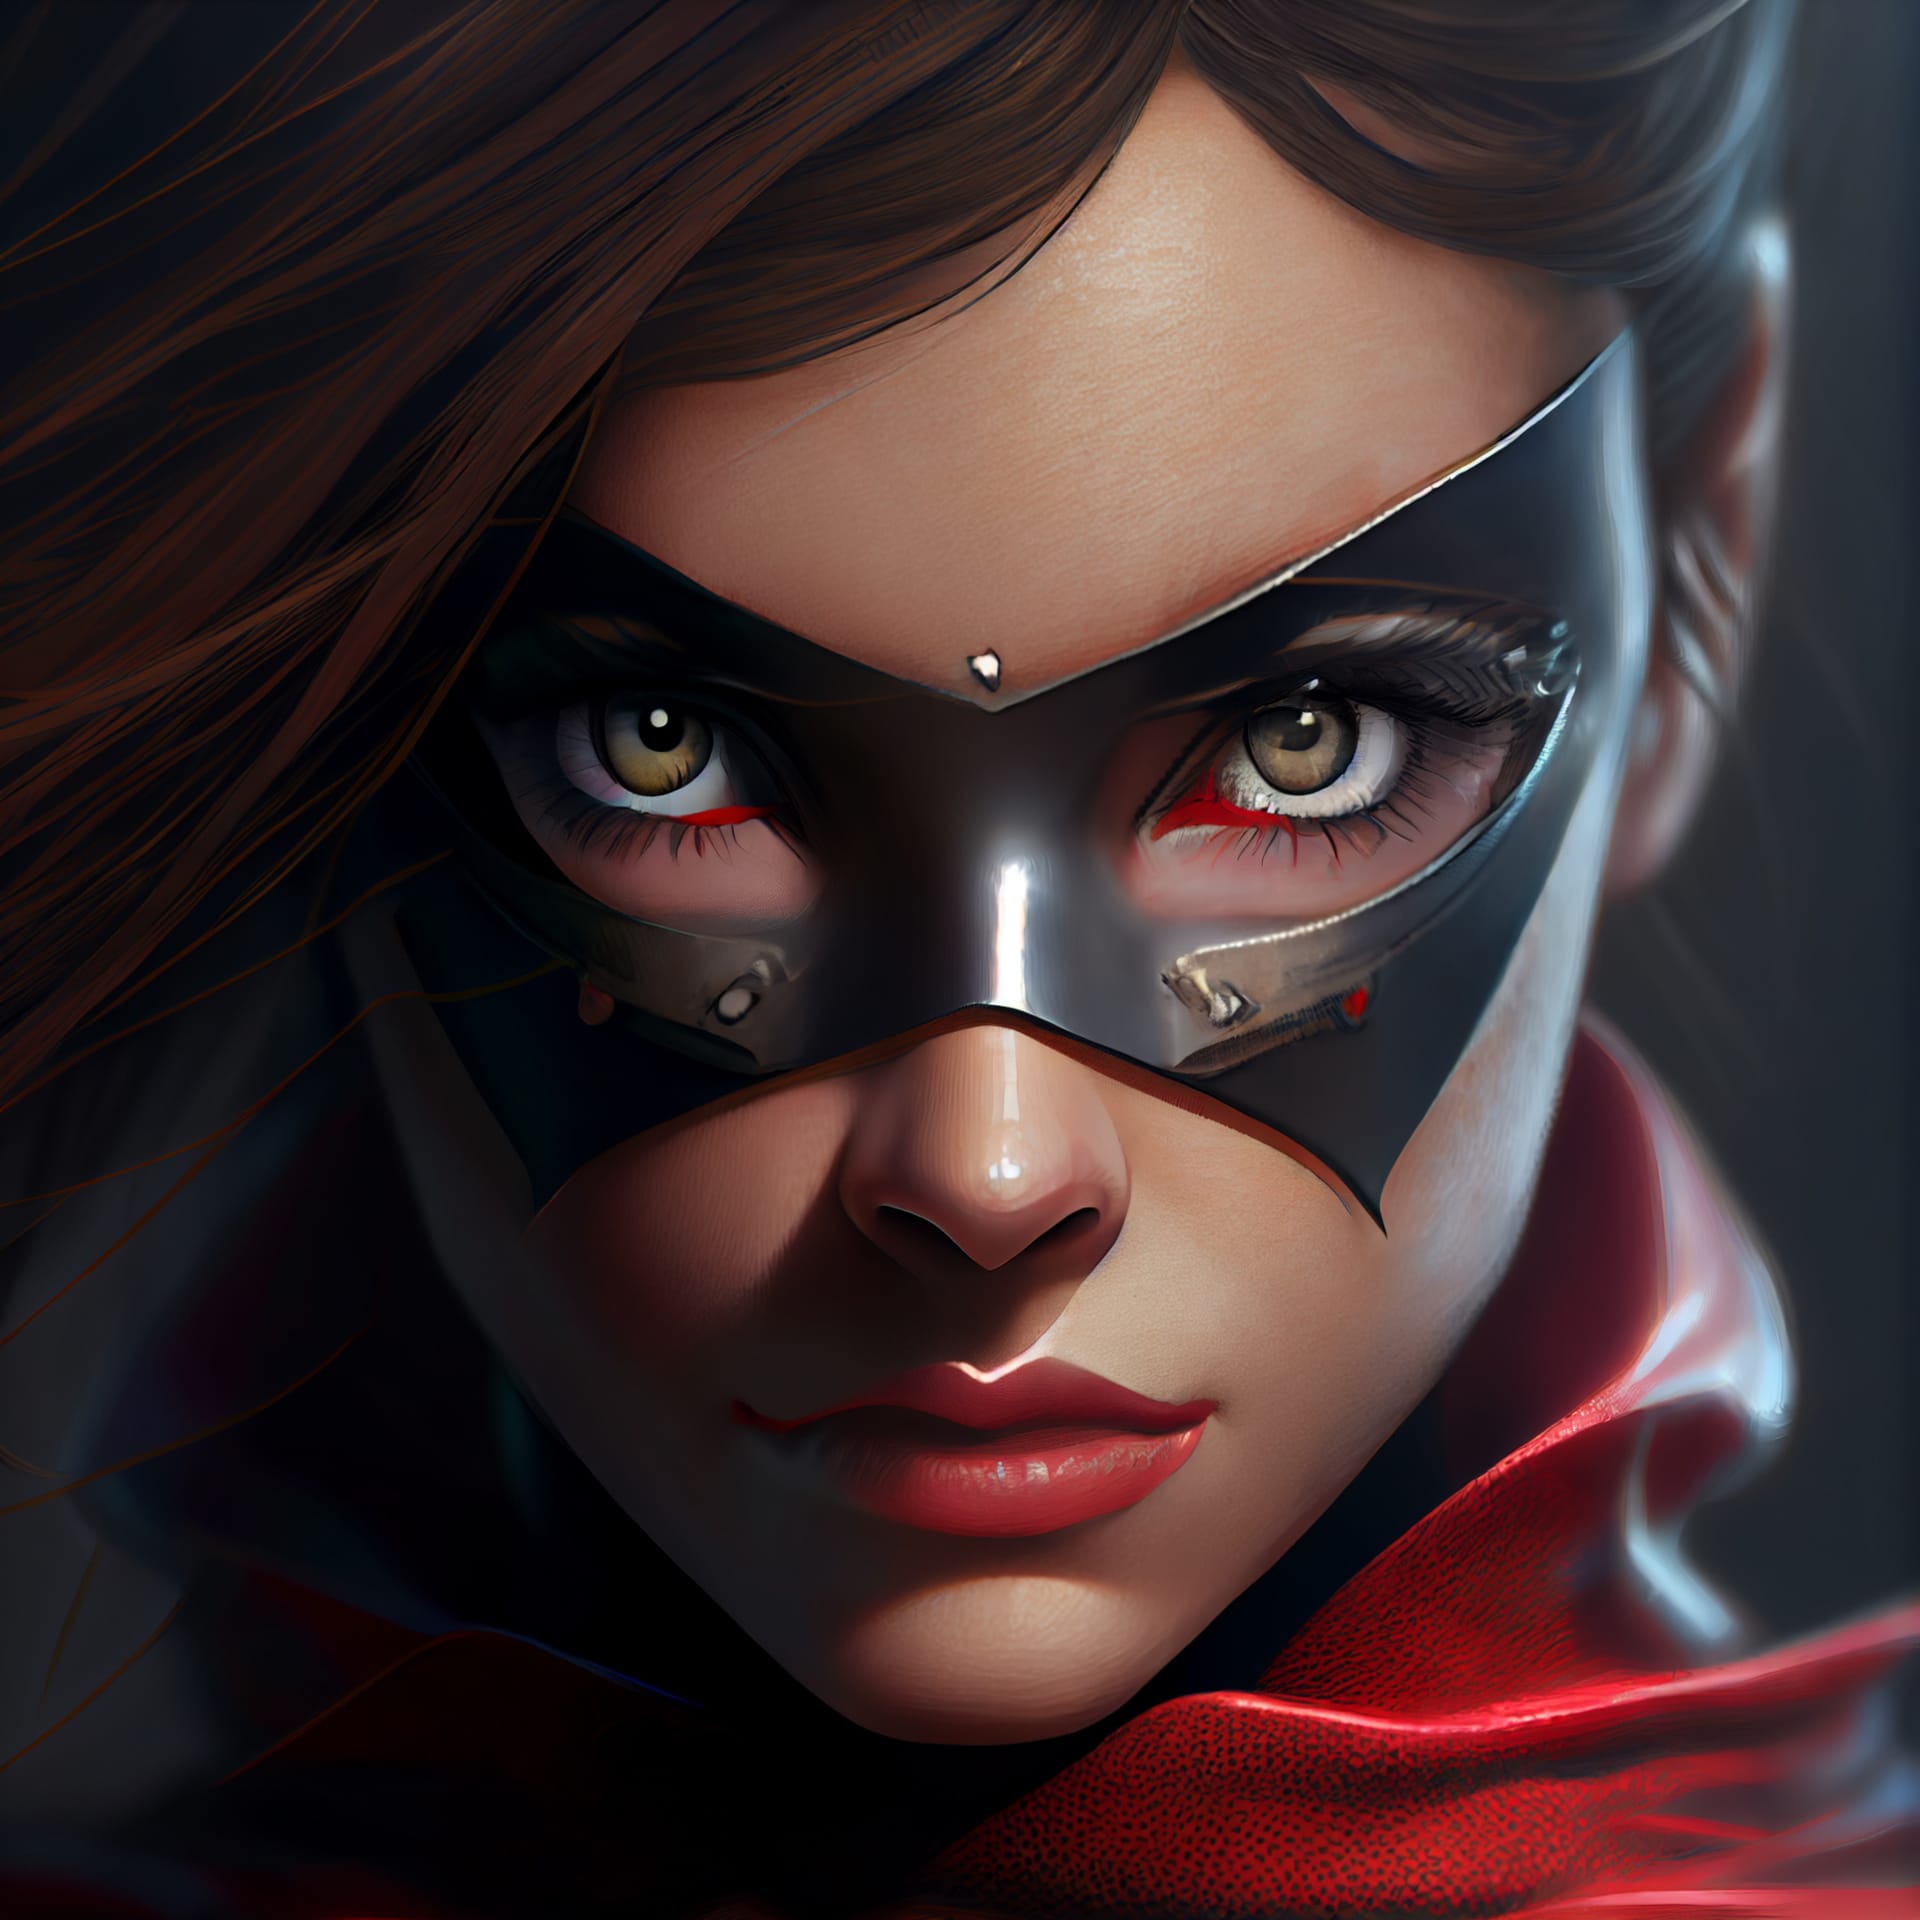 Profile avatar superheroine woman portrait with superpowers 3d excellent image